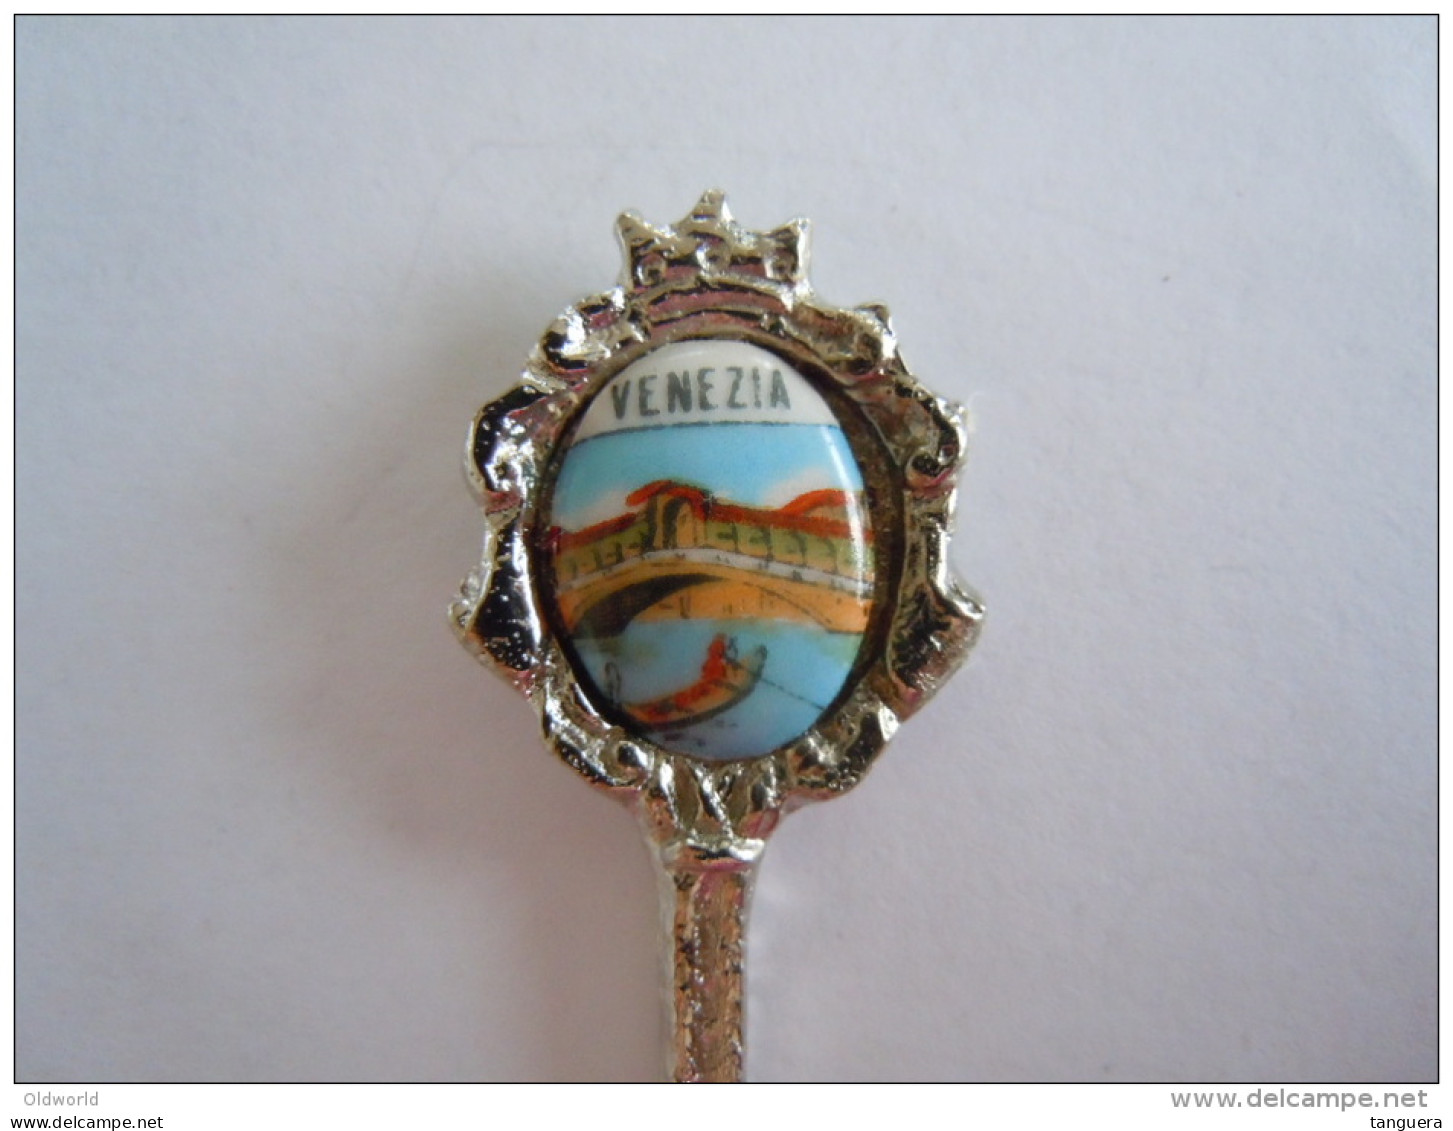 VENEZIA Vintage Souvenir Lepel Petite Cuilllère Little Spoon (ref 20) - Cucharas